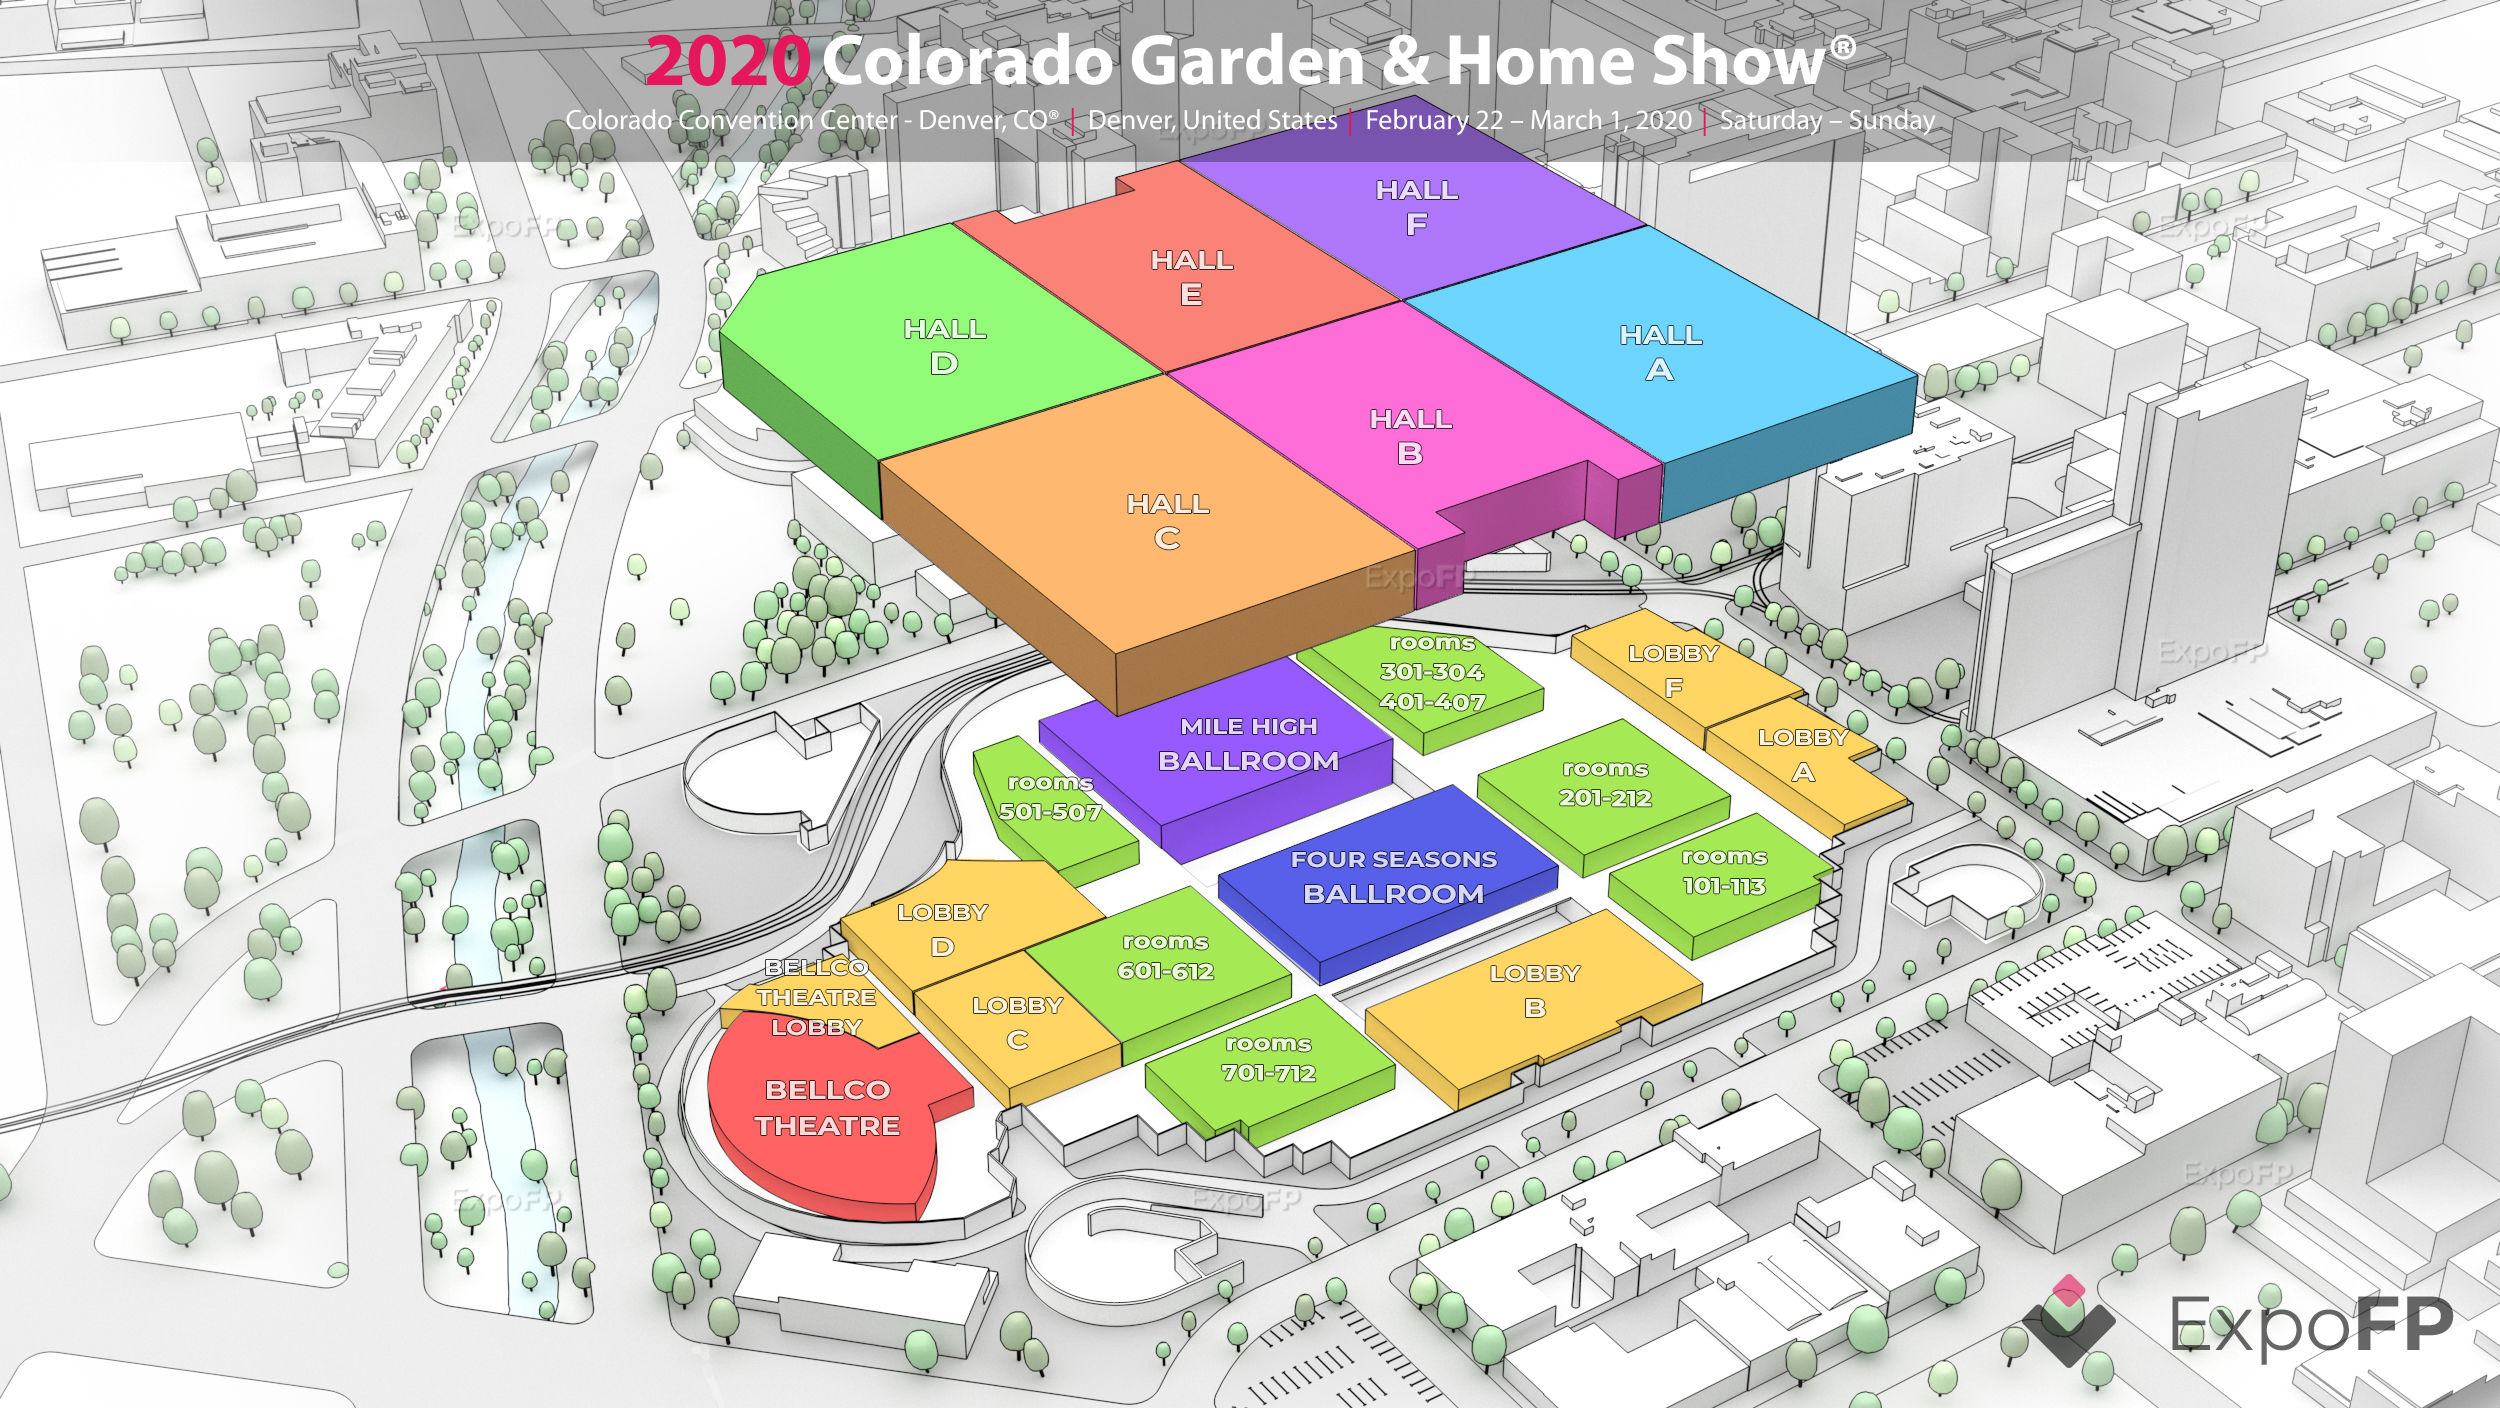 Colorado Garden & Home Show 2020 in Colorado Convention Center Denver, CO